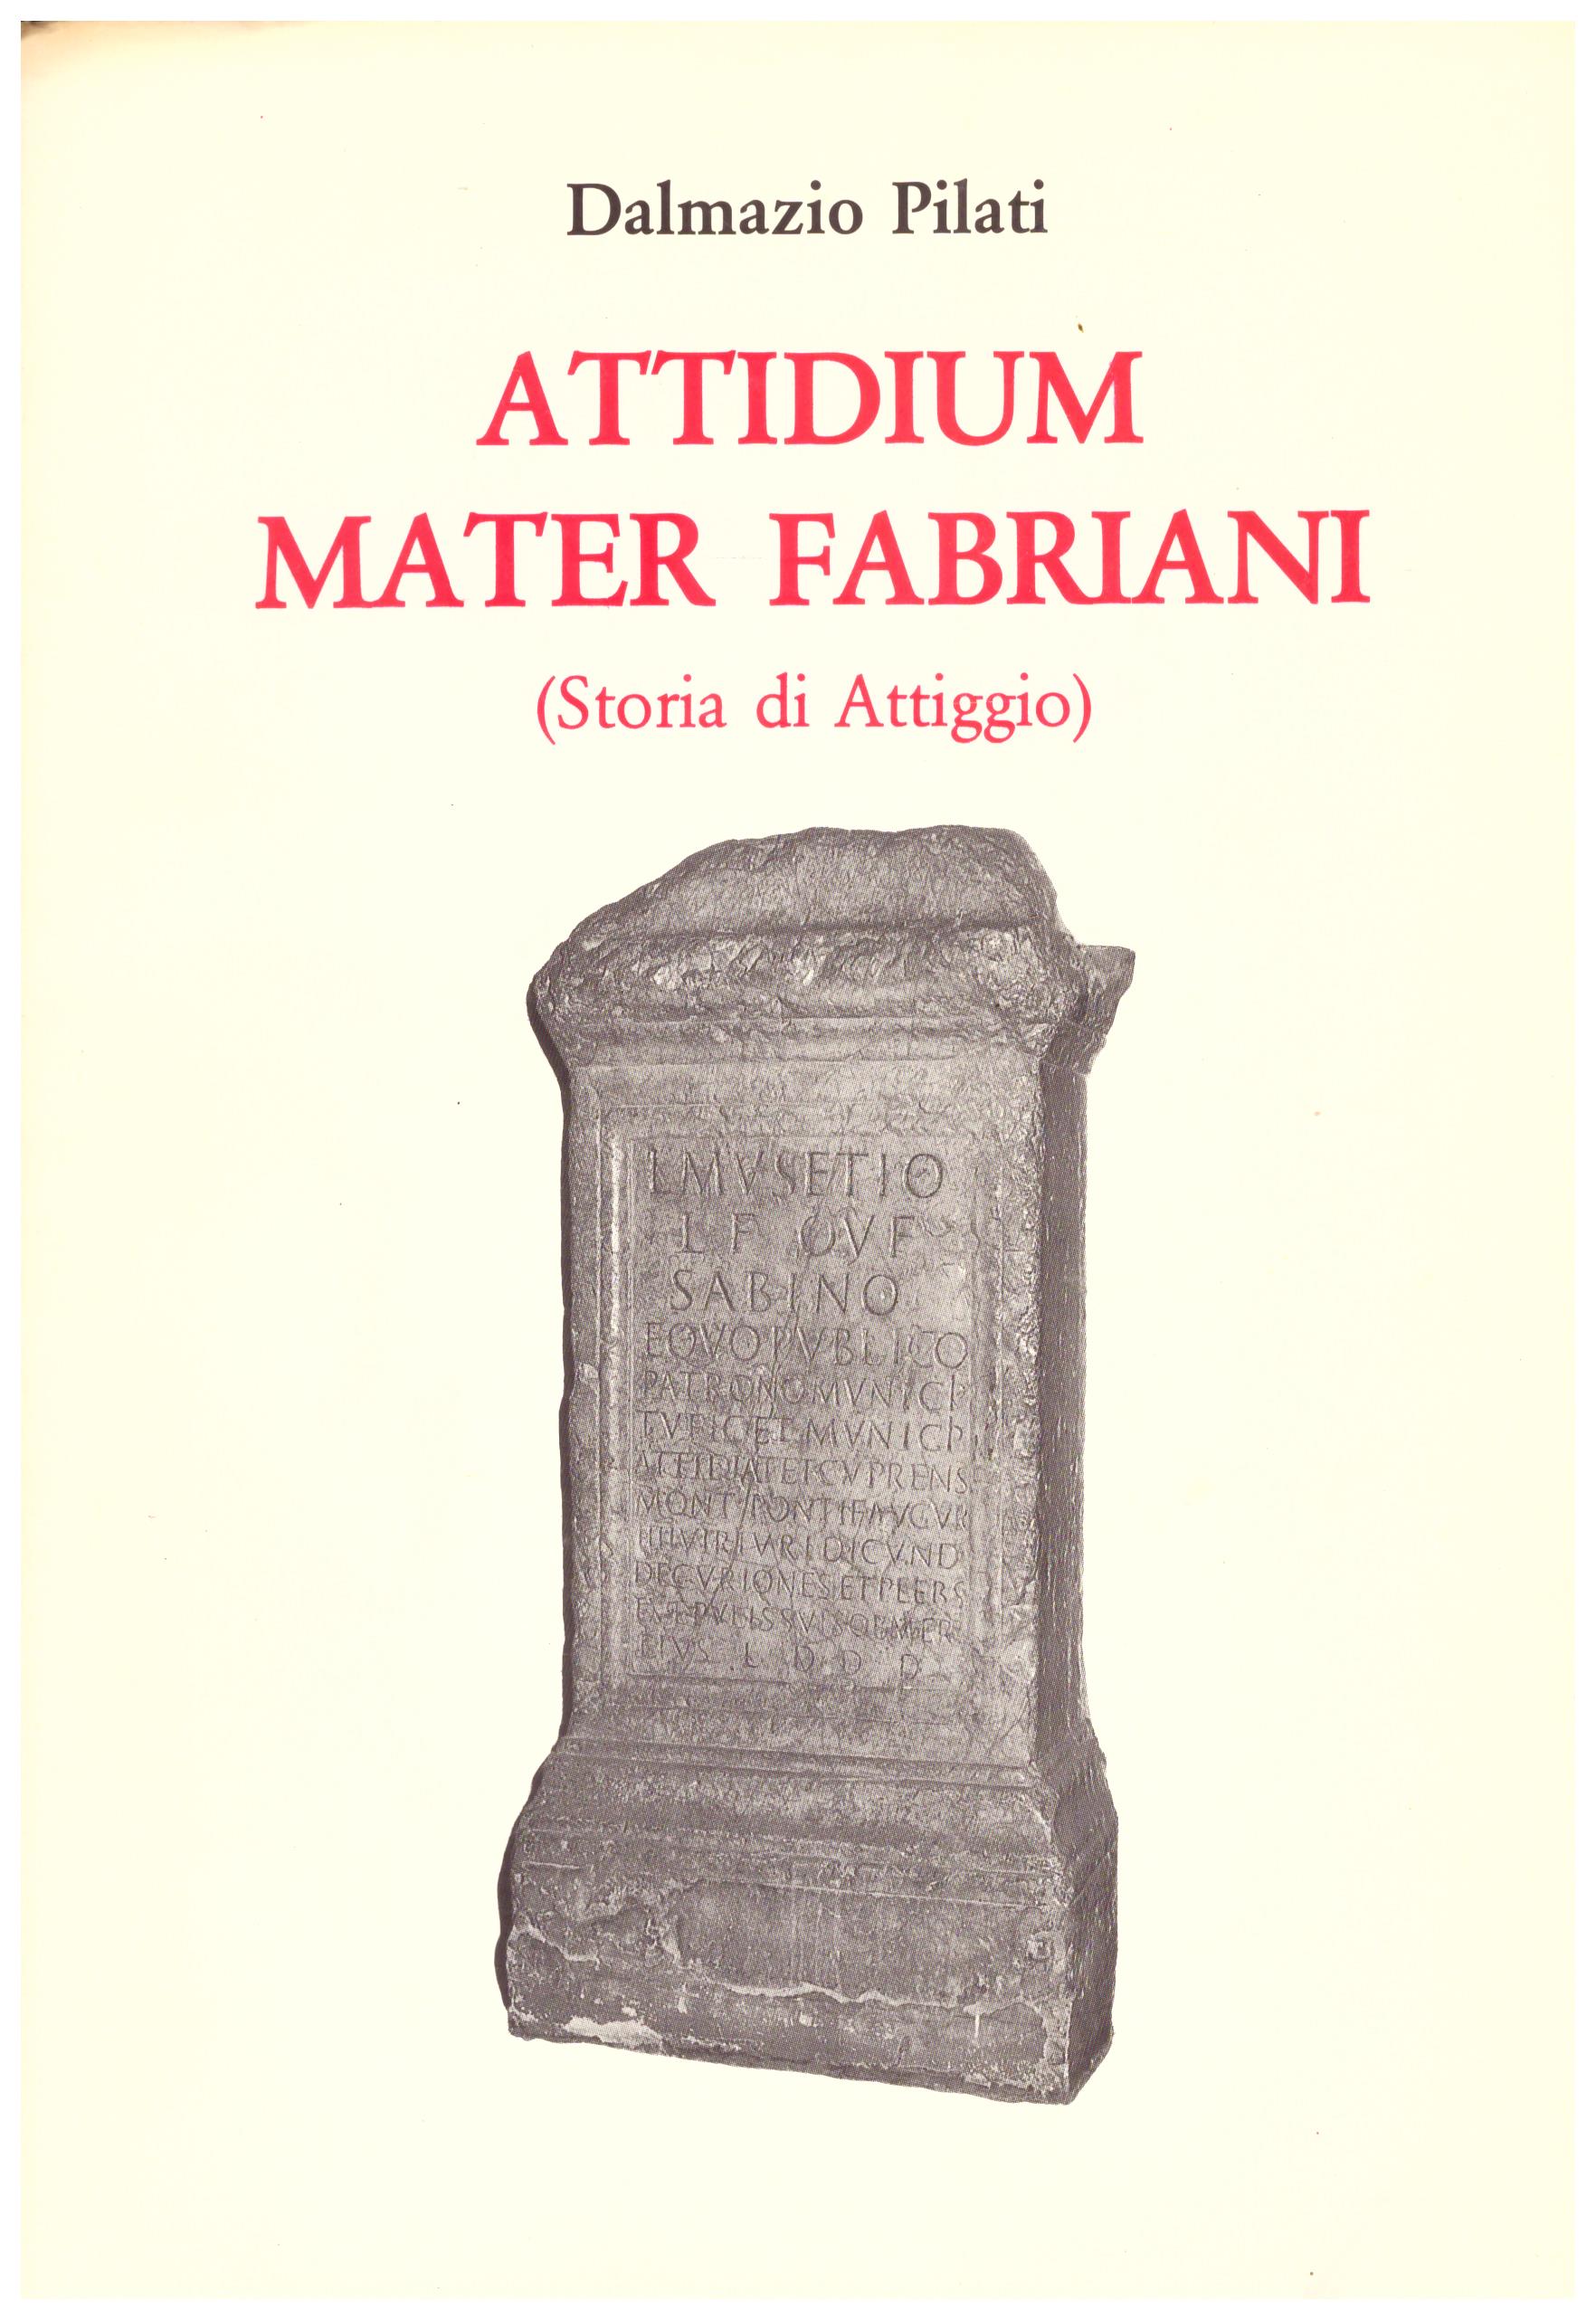 Titolo: Attidium mater Fabriani  Autore : Dalmazio Pilati  Editore: tipo lito graphostil matelica 1988